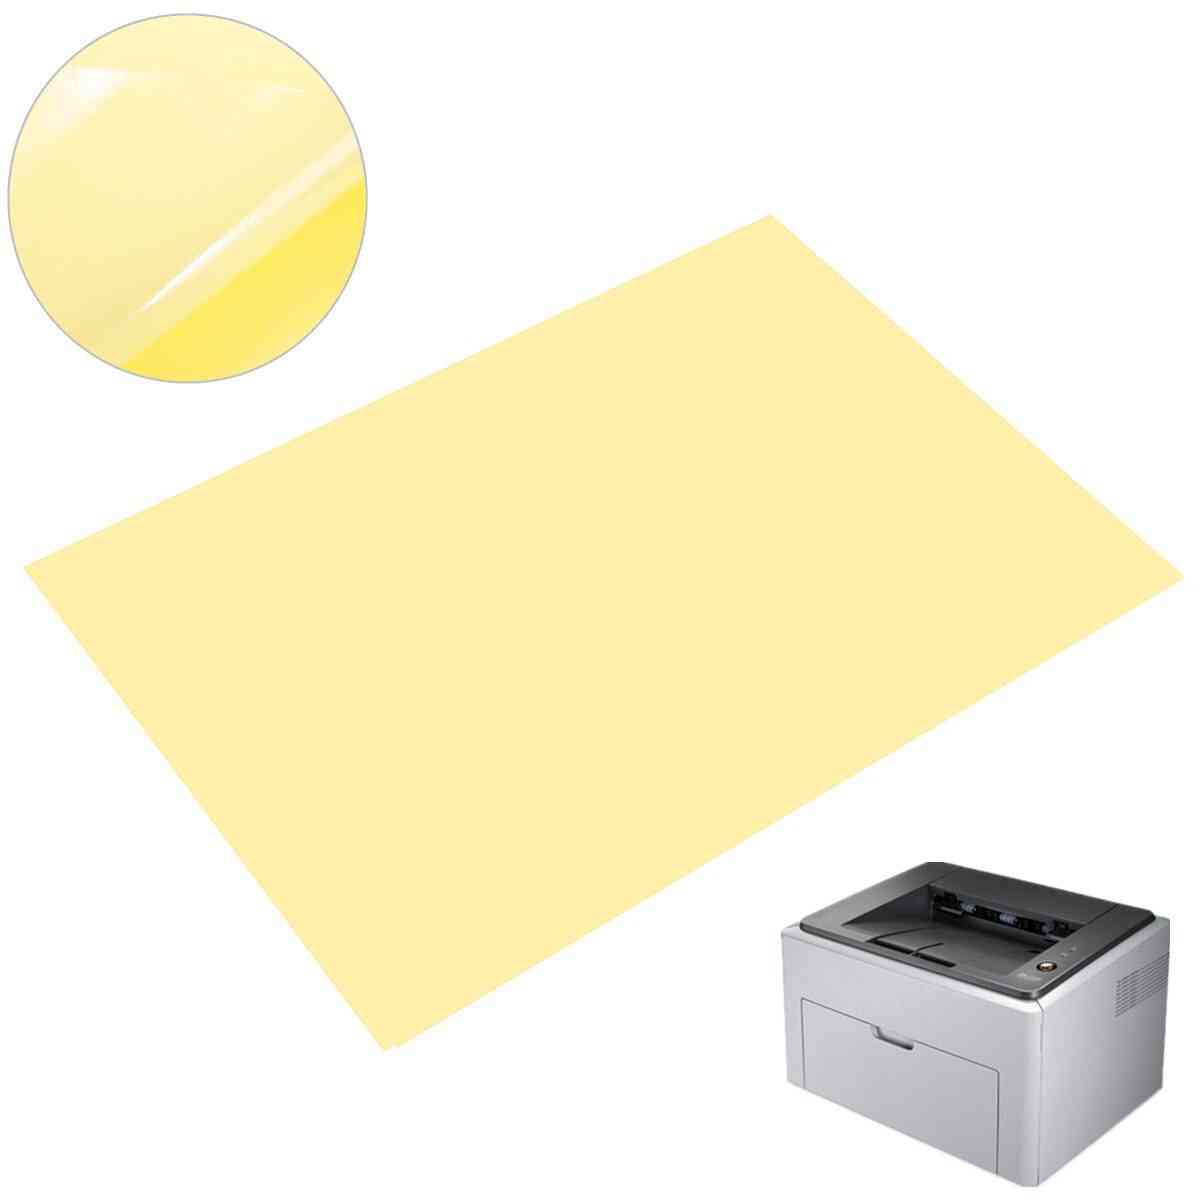 Etiqueta autoadhesiva de pvc a4 para laminación de impresora láser (a4 (210x297 mm))